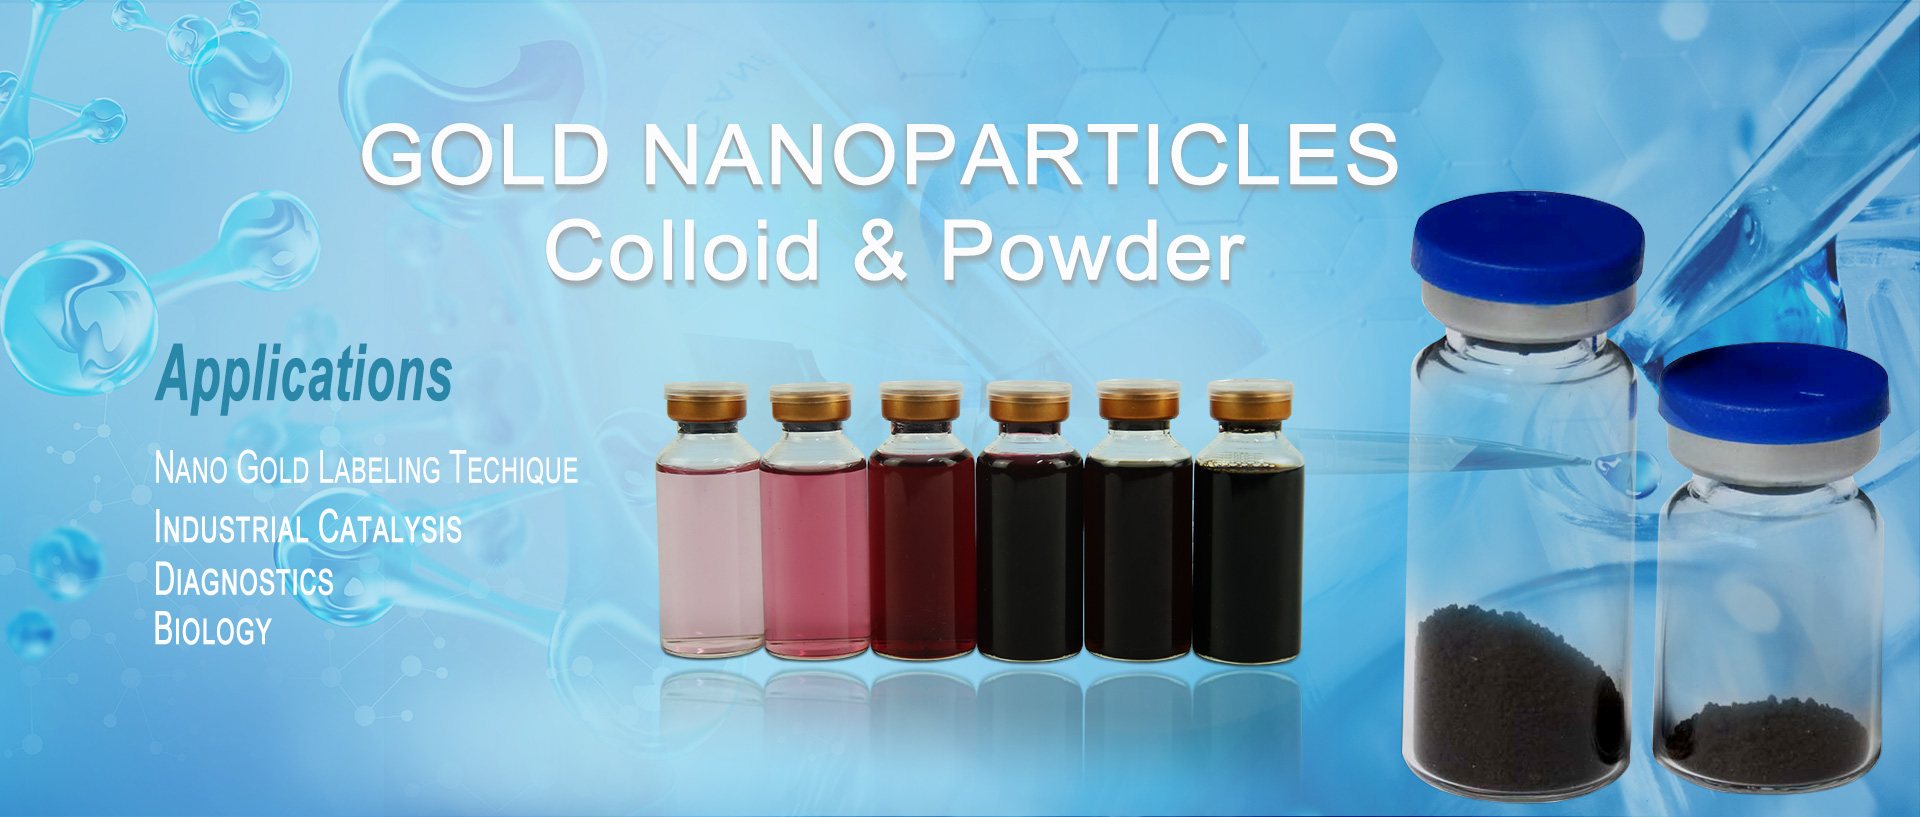 zahabu nanoparticles